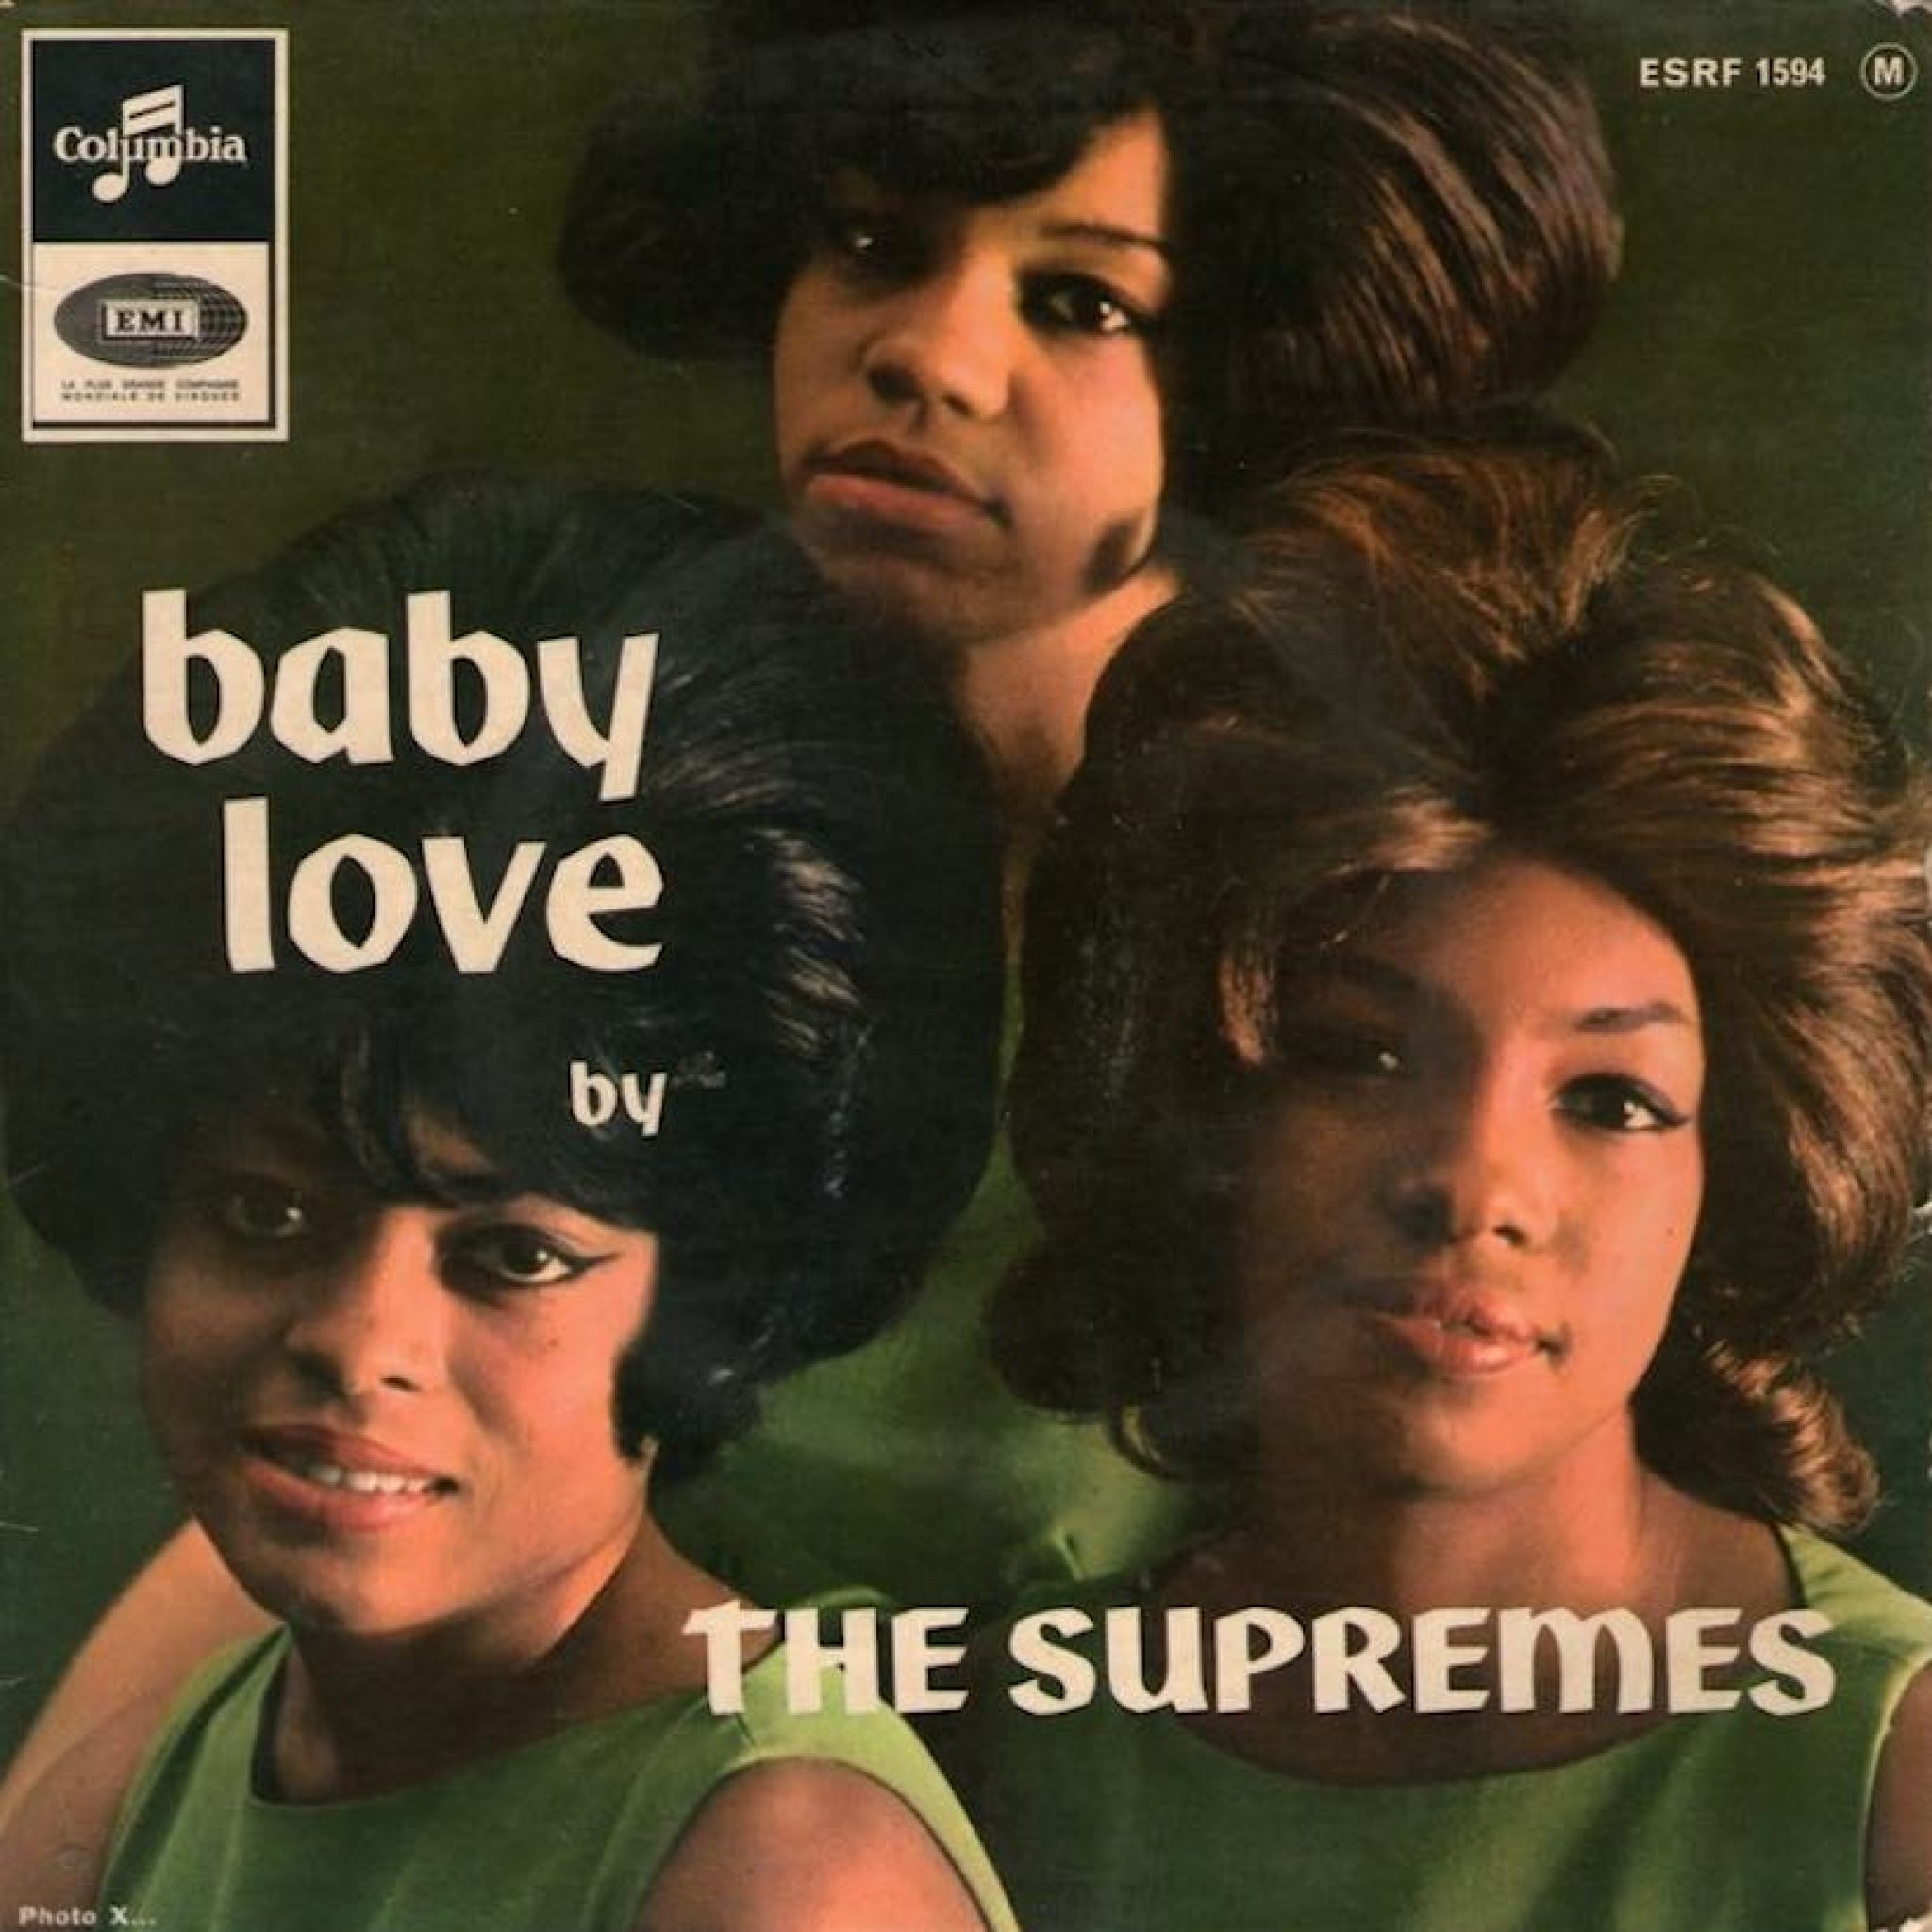 Лов беби песня. The Supremes. The Supremes the Supremes - Baby Love. The Supremes 1964. Baby Love.